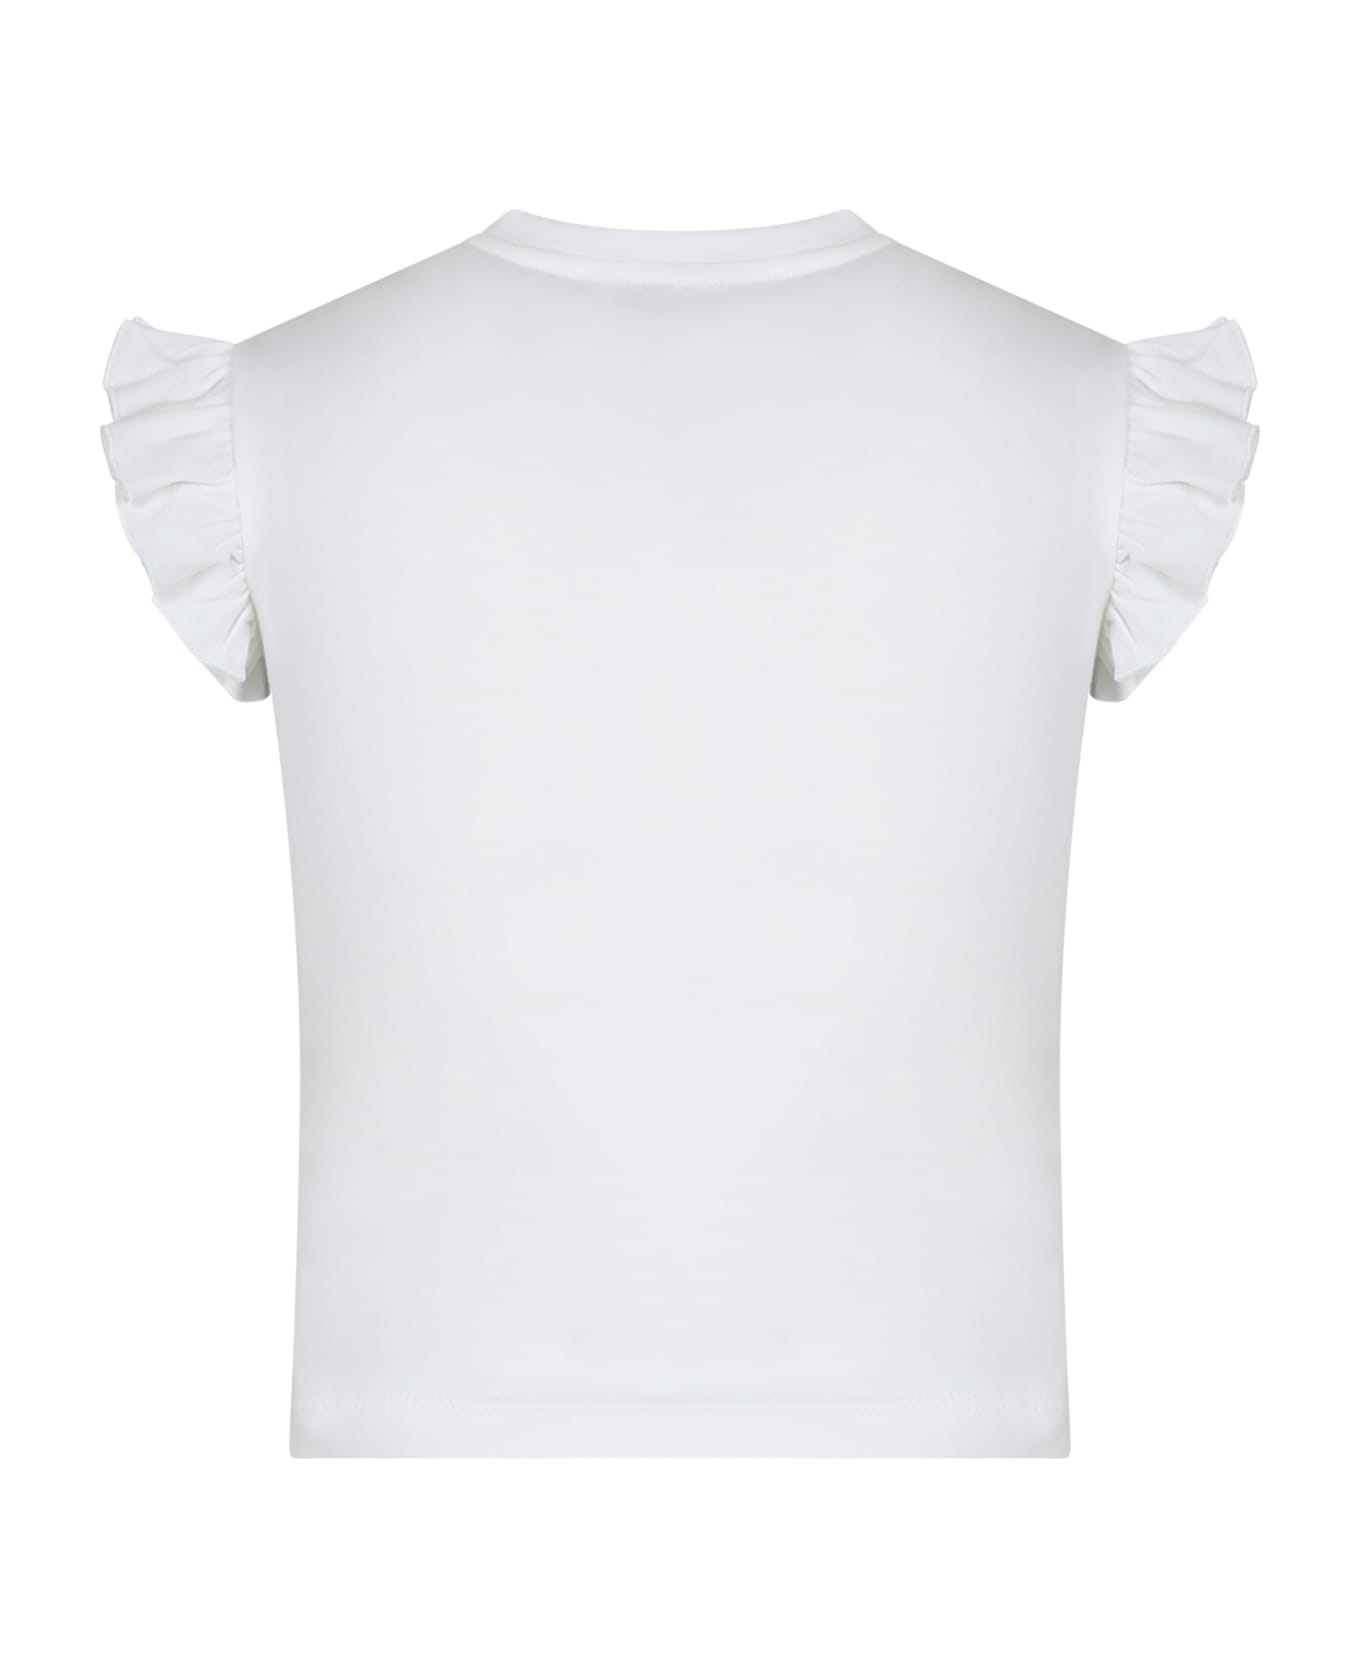 Simonetta White T-shirt For Baby Girl With Roses - White